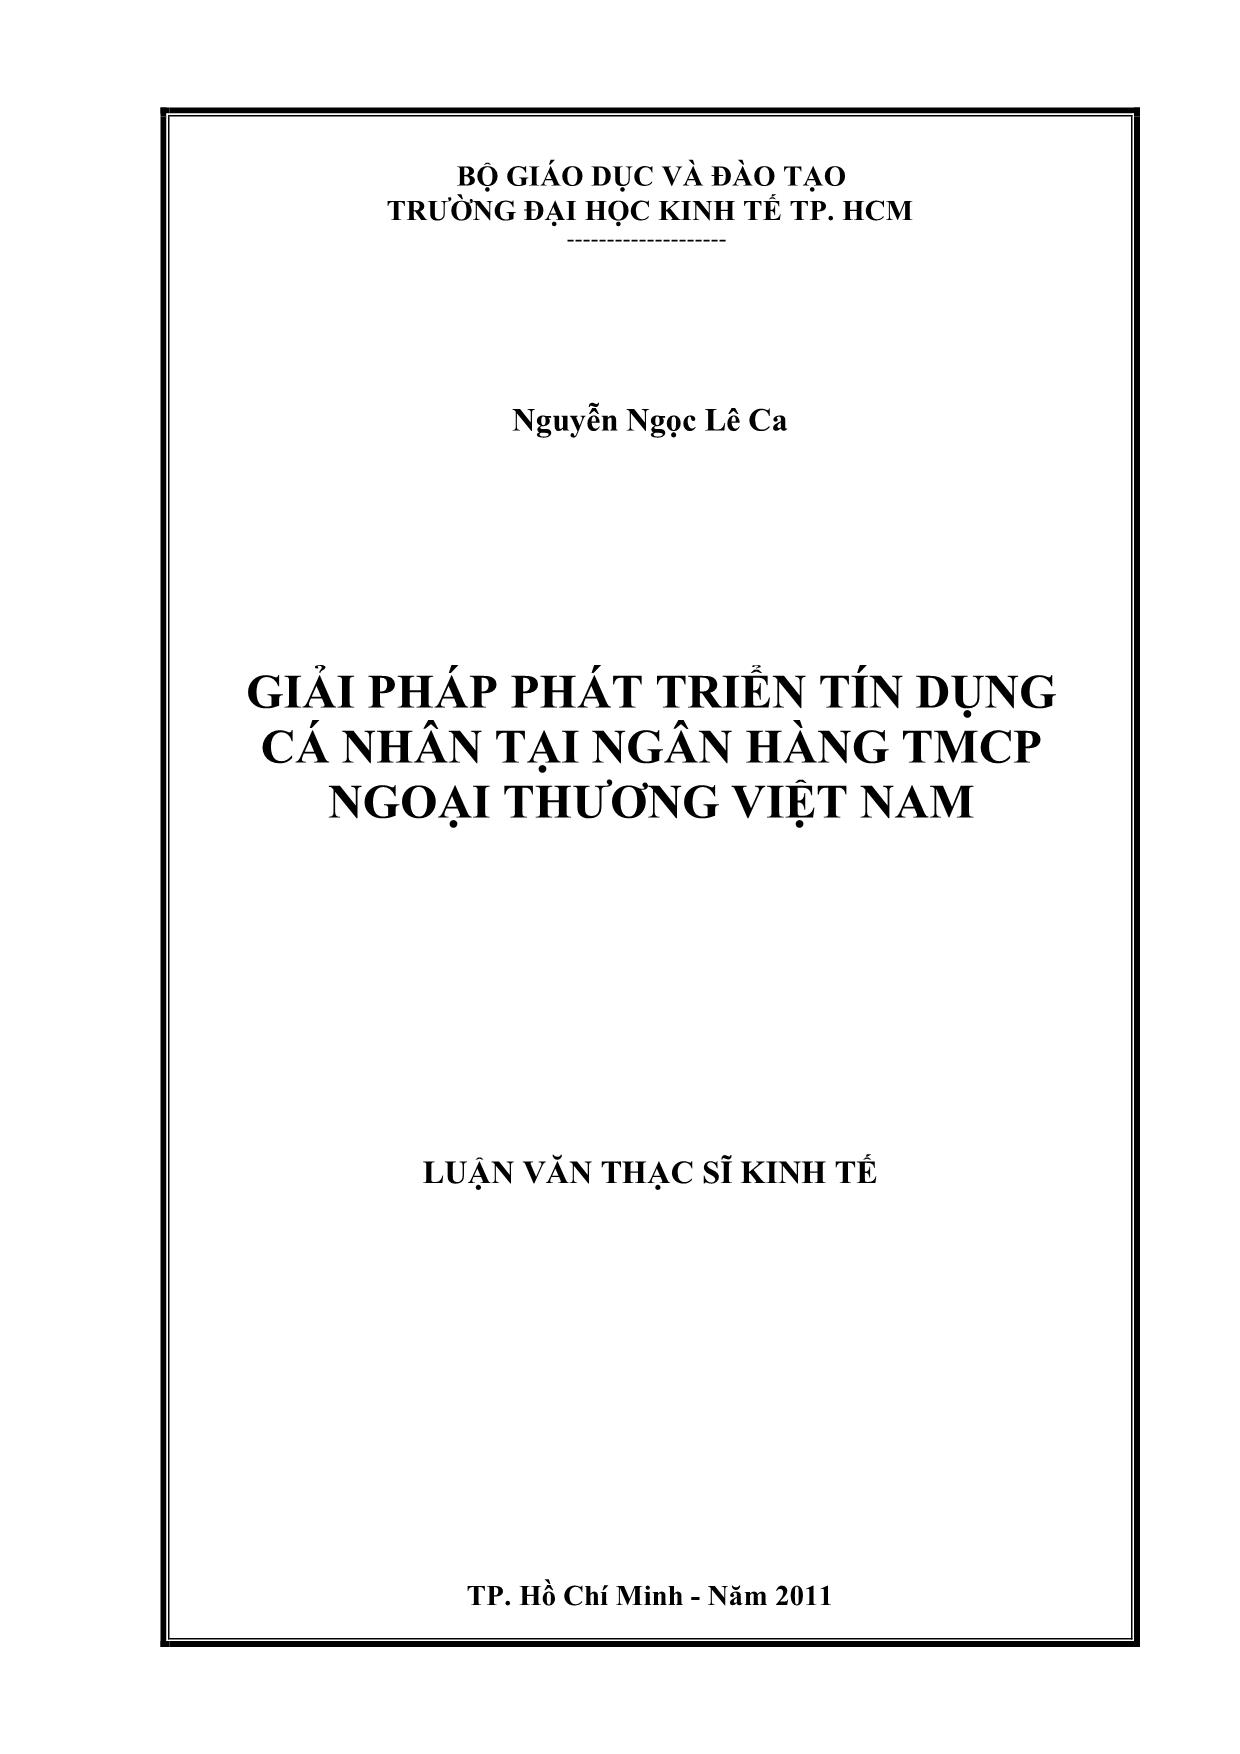 Luận văn Giải pháp phát triển tín dụng cá nhân tại ngân hàng thương mại cổ phần ngoại thương Việt Nam trang 1